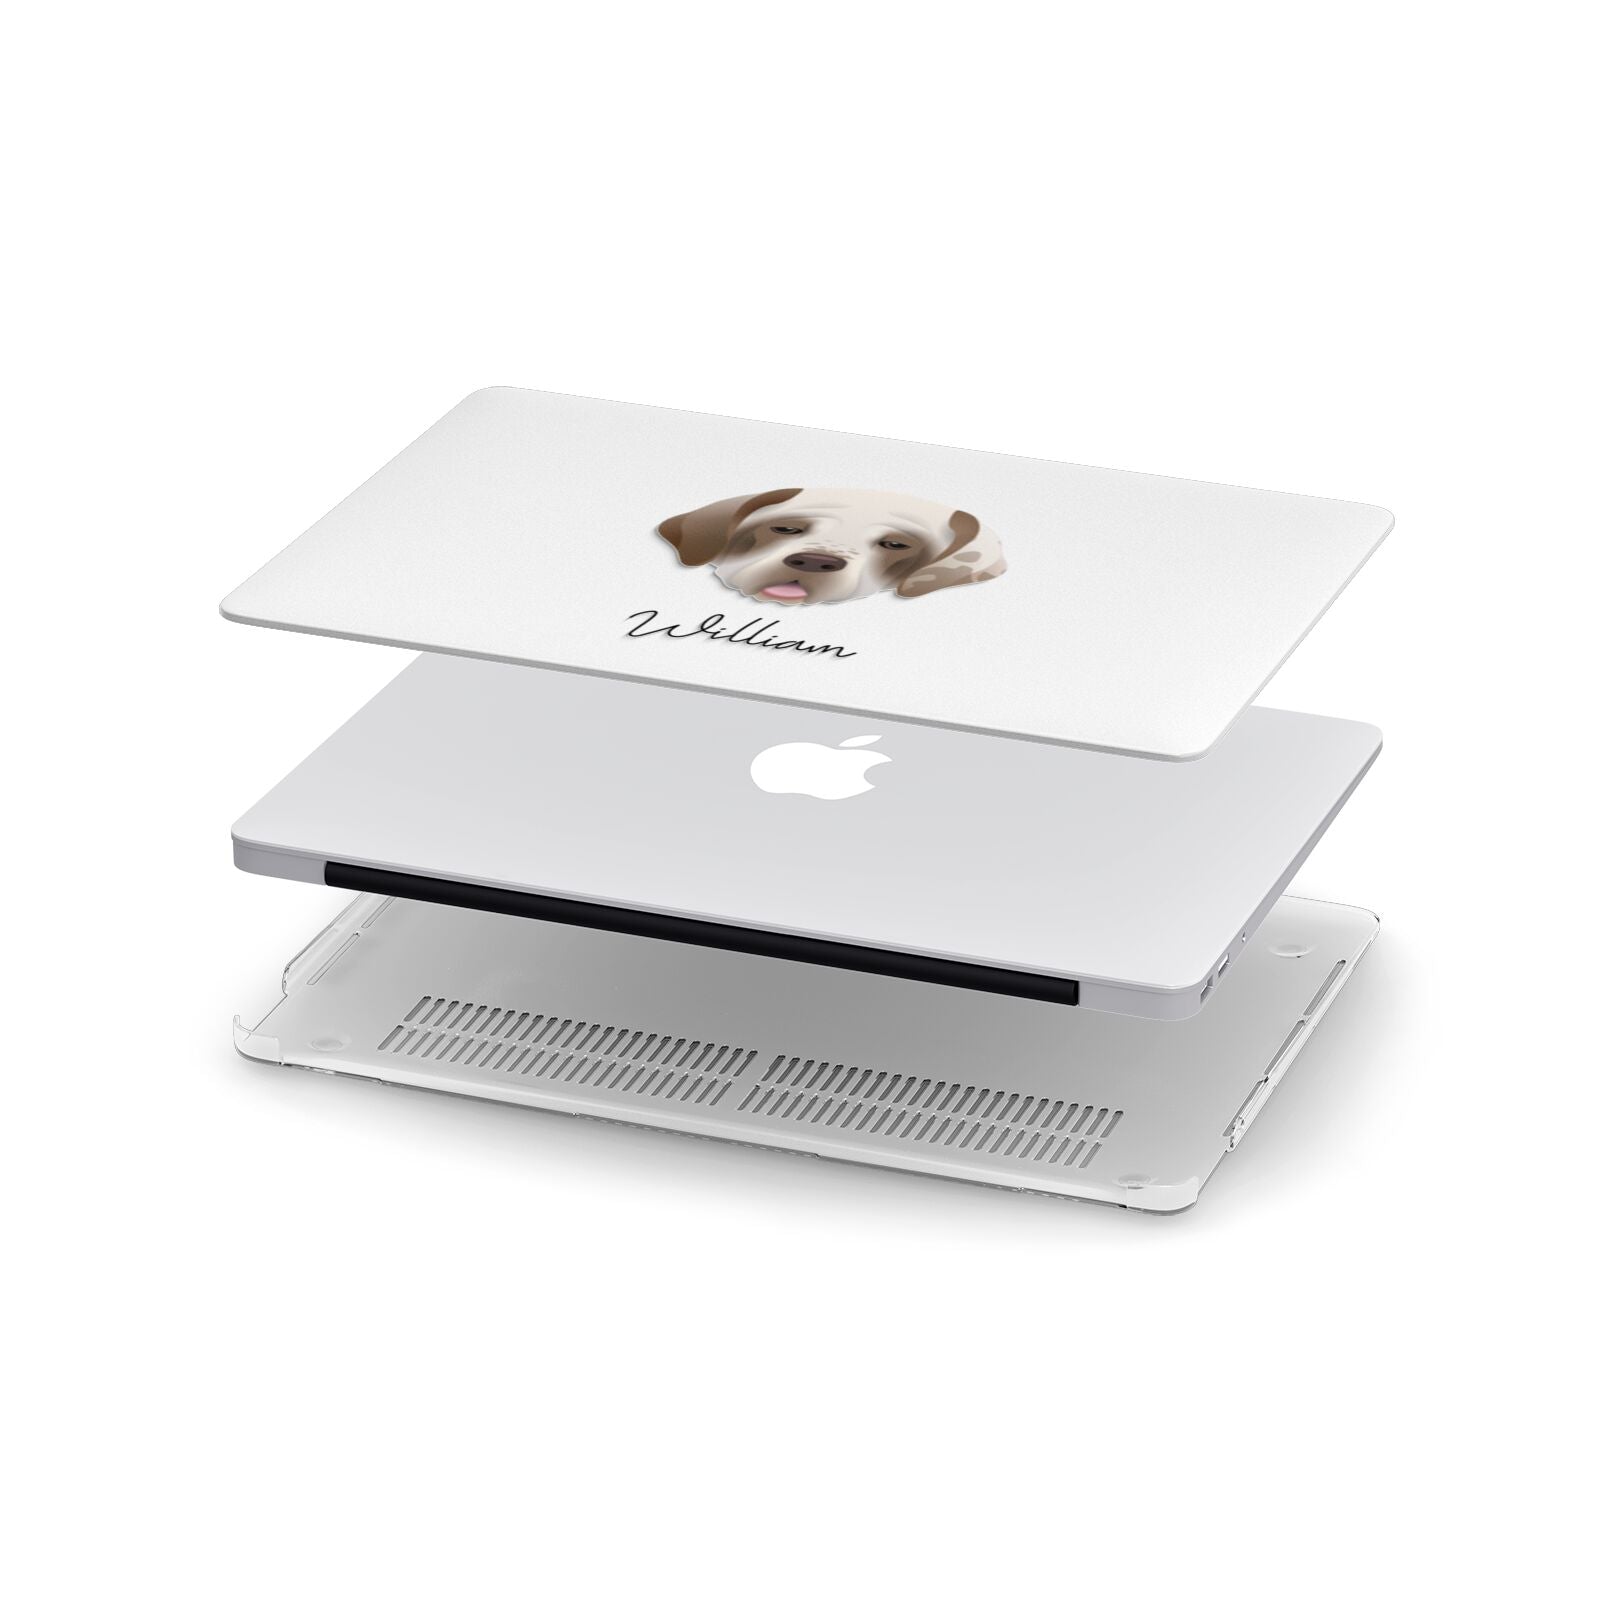 Clumber Spaniel Personalised Apple MacBook Case in Detail